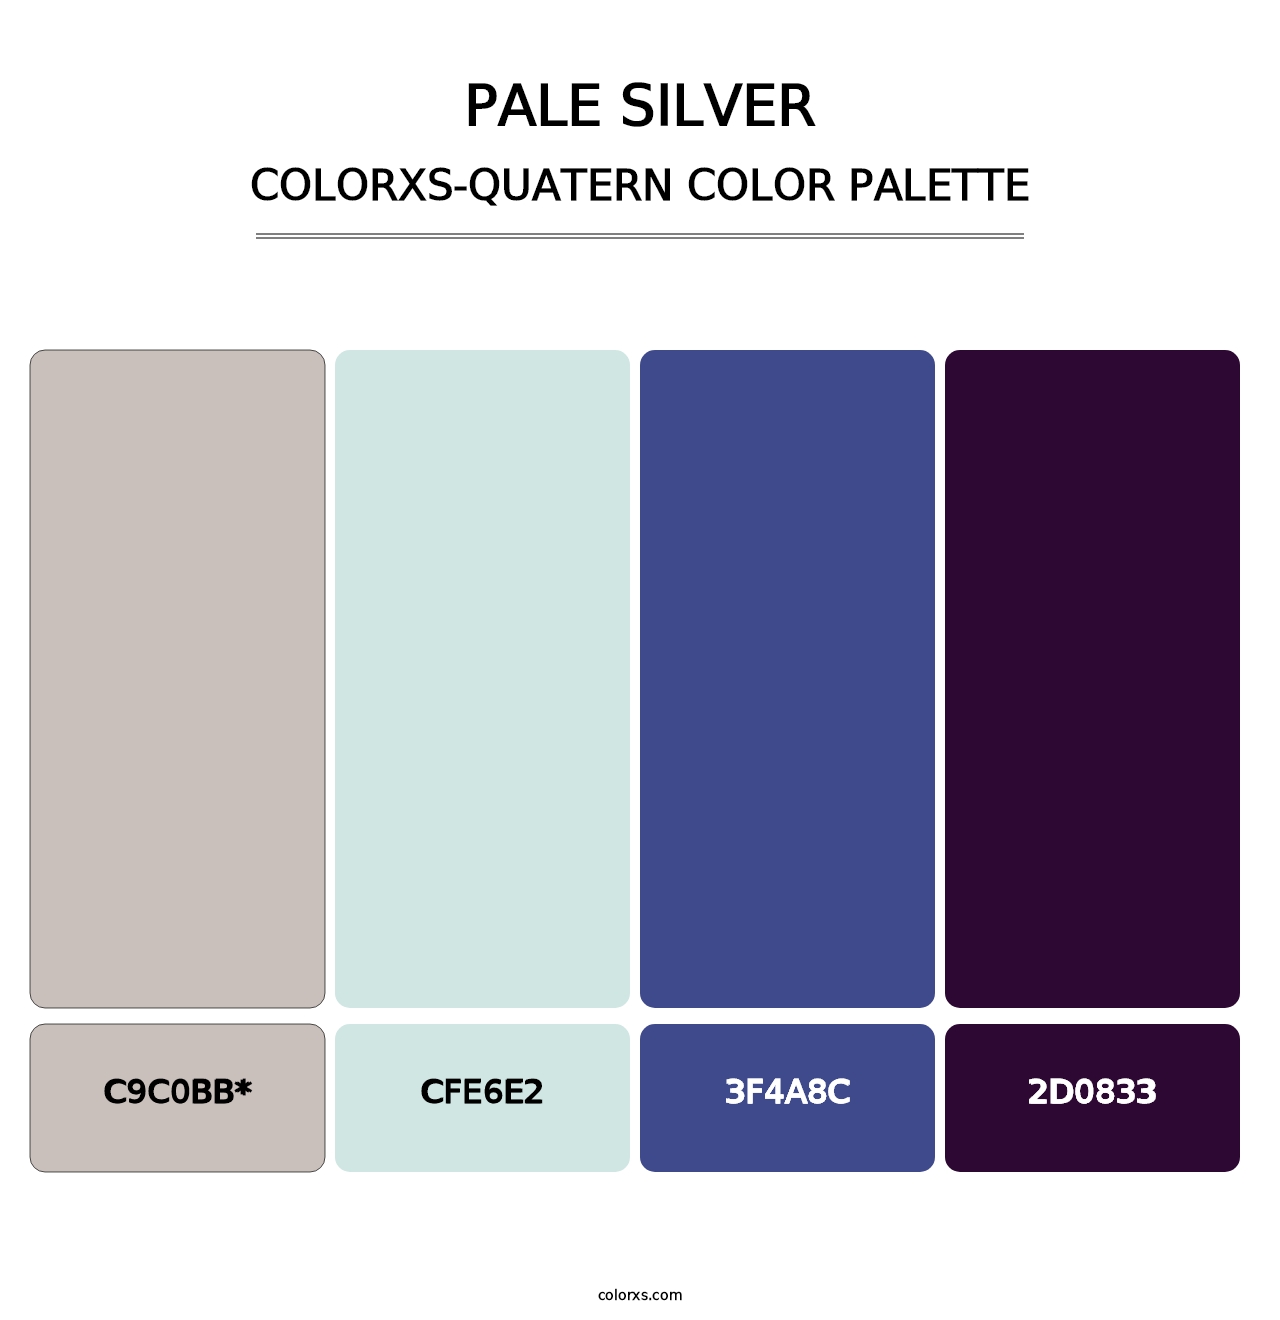 Pale Silver - Colorxs Quatern Palette